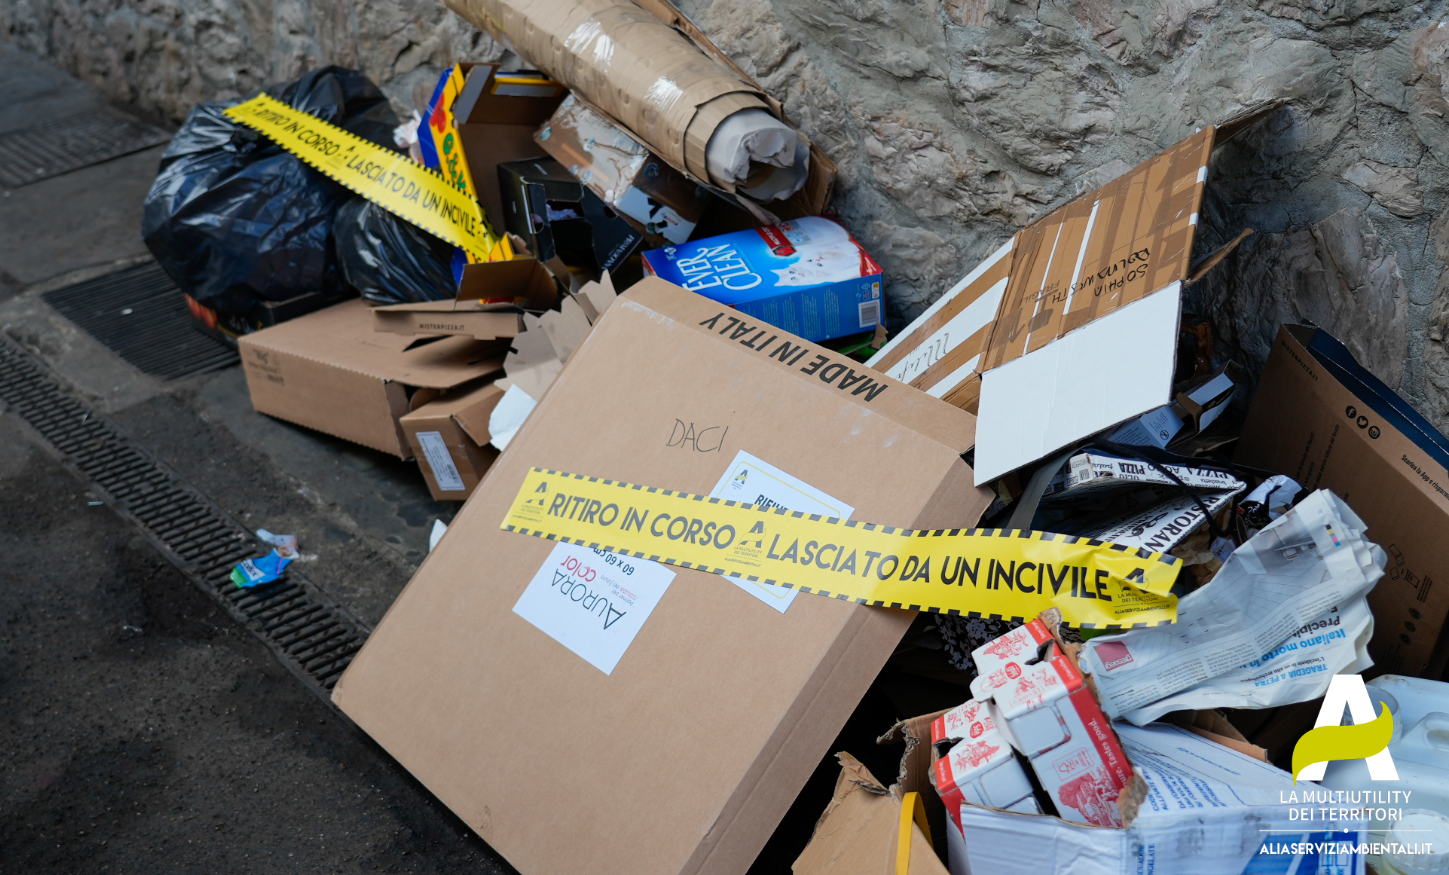 Adesivo sui rifiuti abbandonati ‘Lasciato da un incivile! Ritiro in corso’ (Fonte foto Alia Spa)